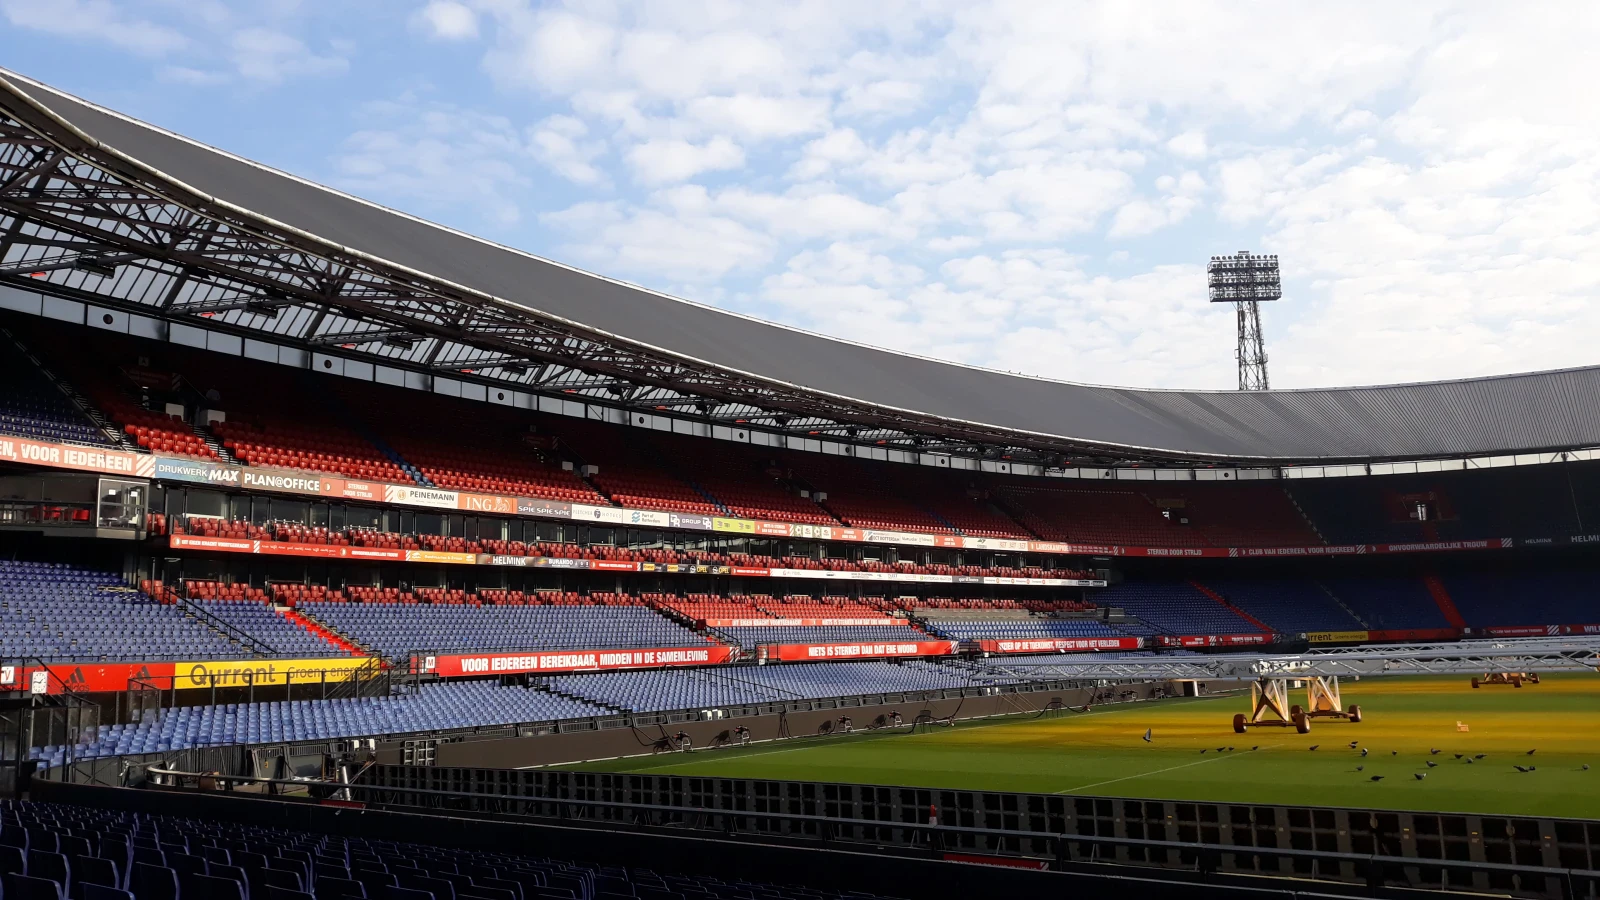 'Feyenoord gaat binnenkort lampen van lichtmasten vervangen in LED-lampen'